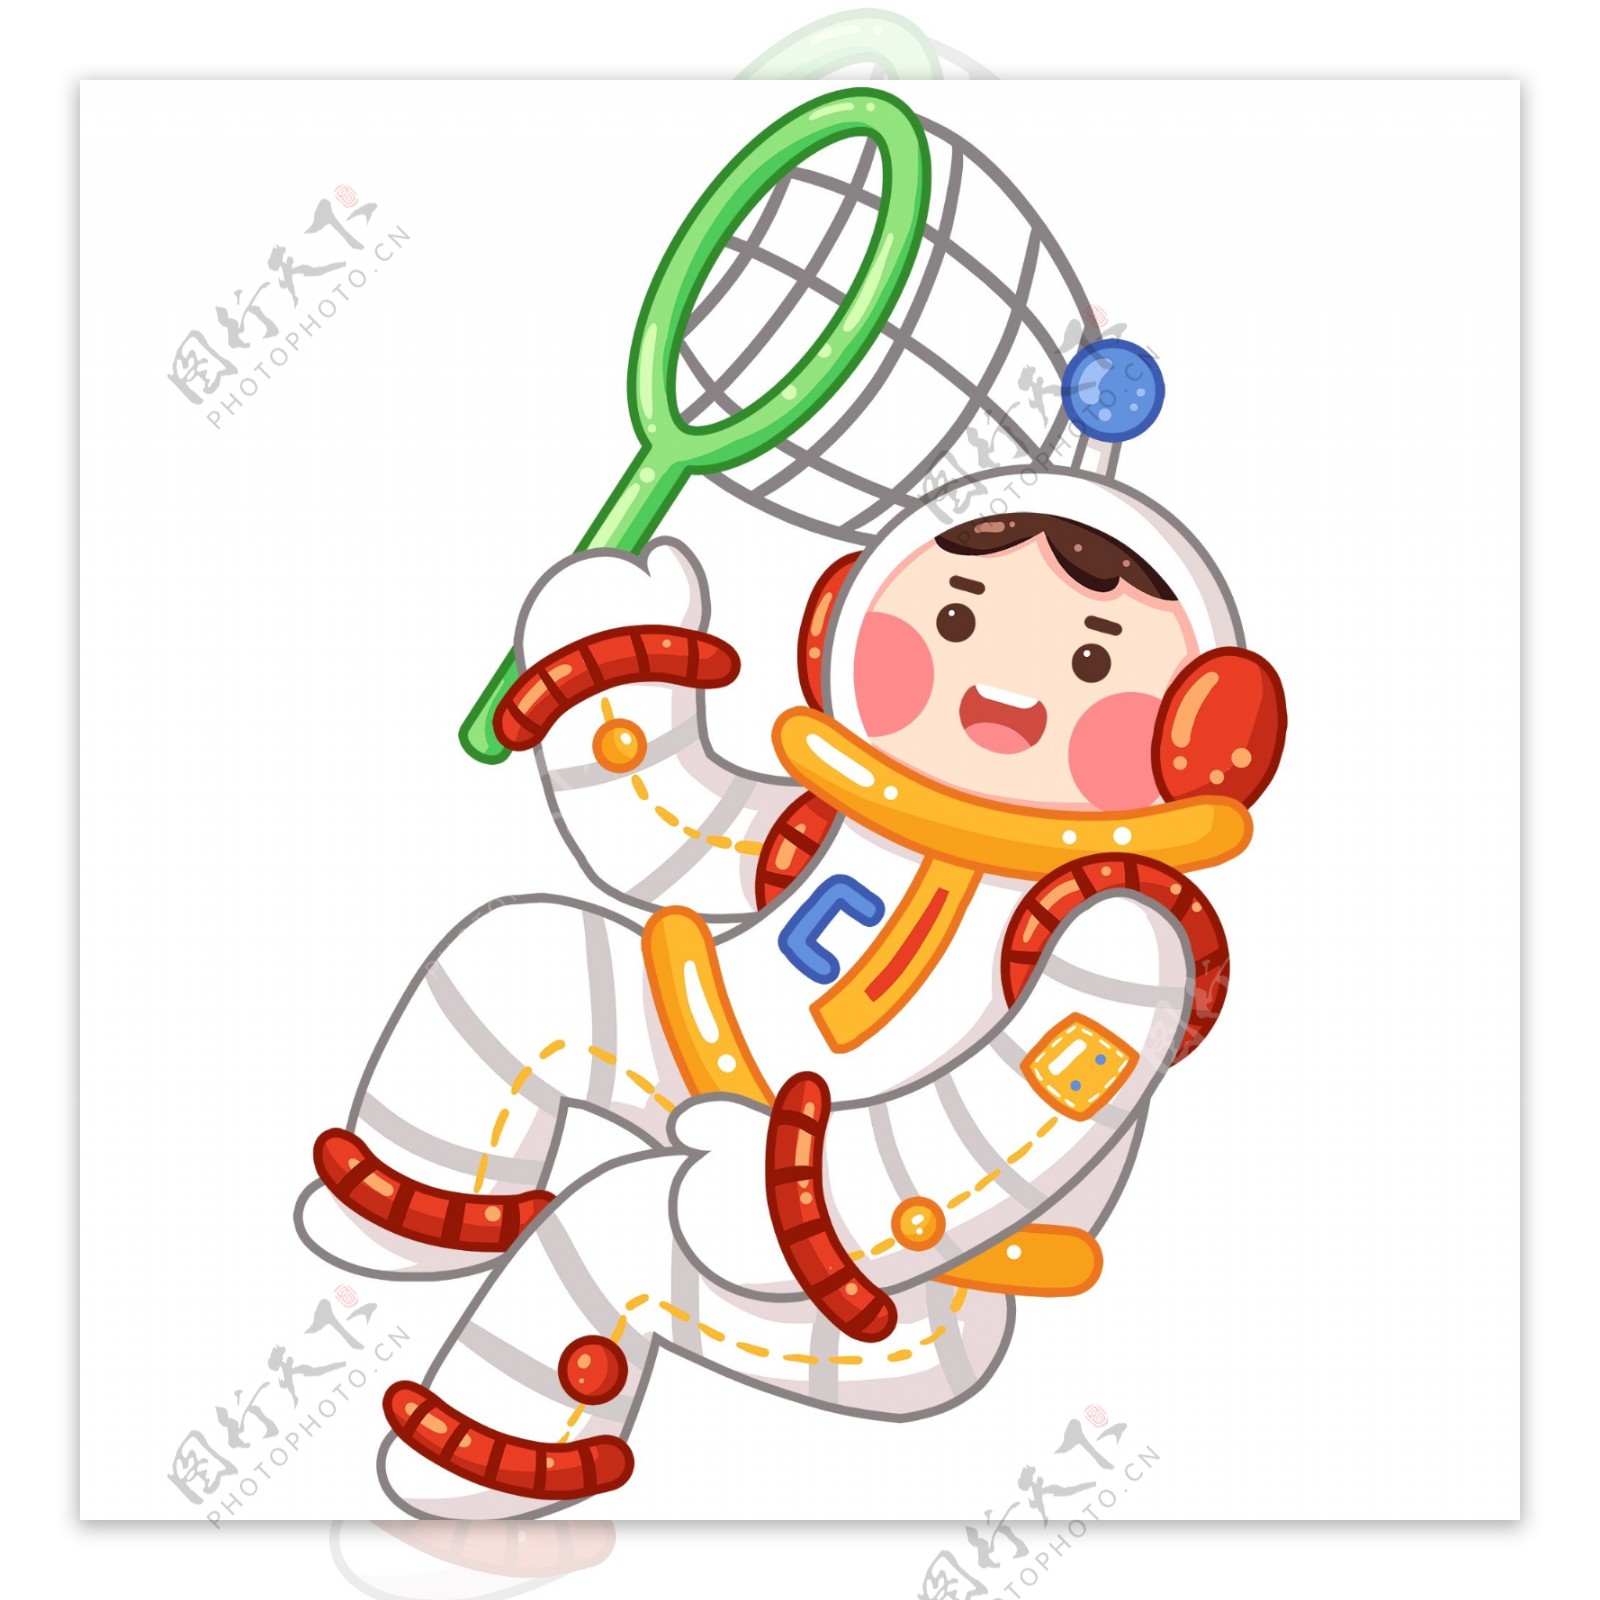 卡通可爱太空人人物设计